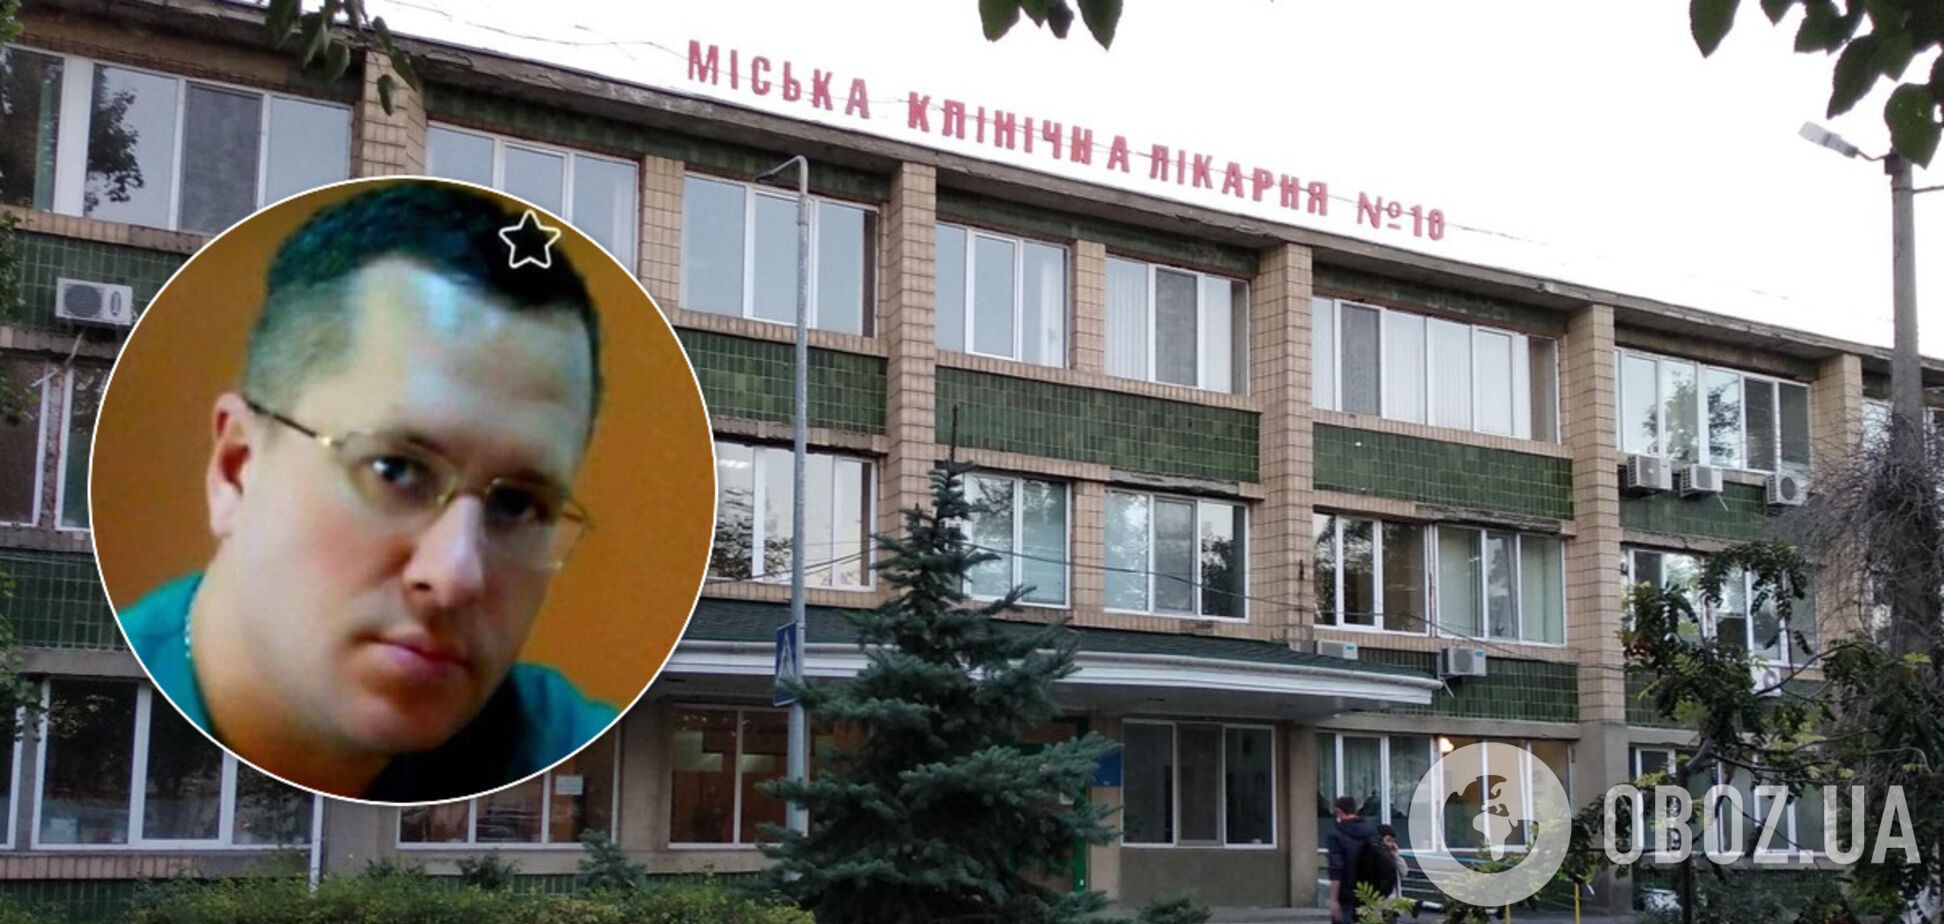 В Одессе врач-реаниматолог Белинов умер от коронавируса: трагедия всколыхнула город